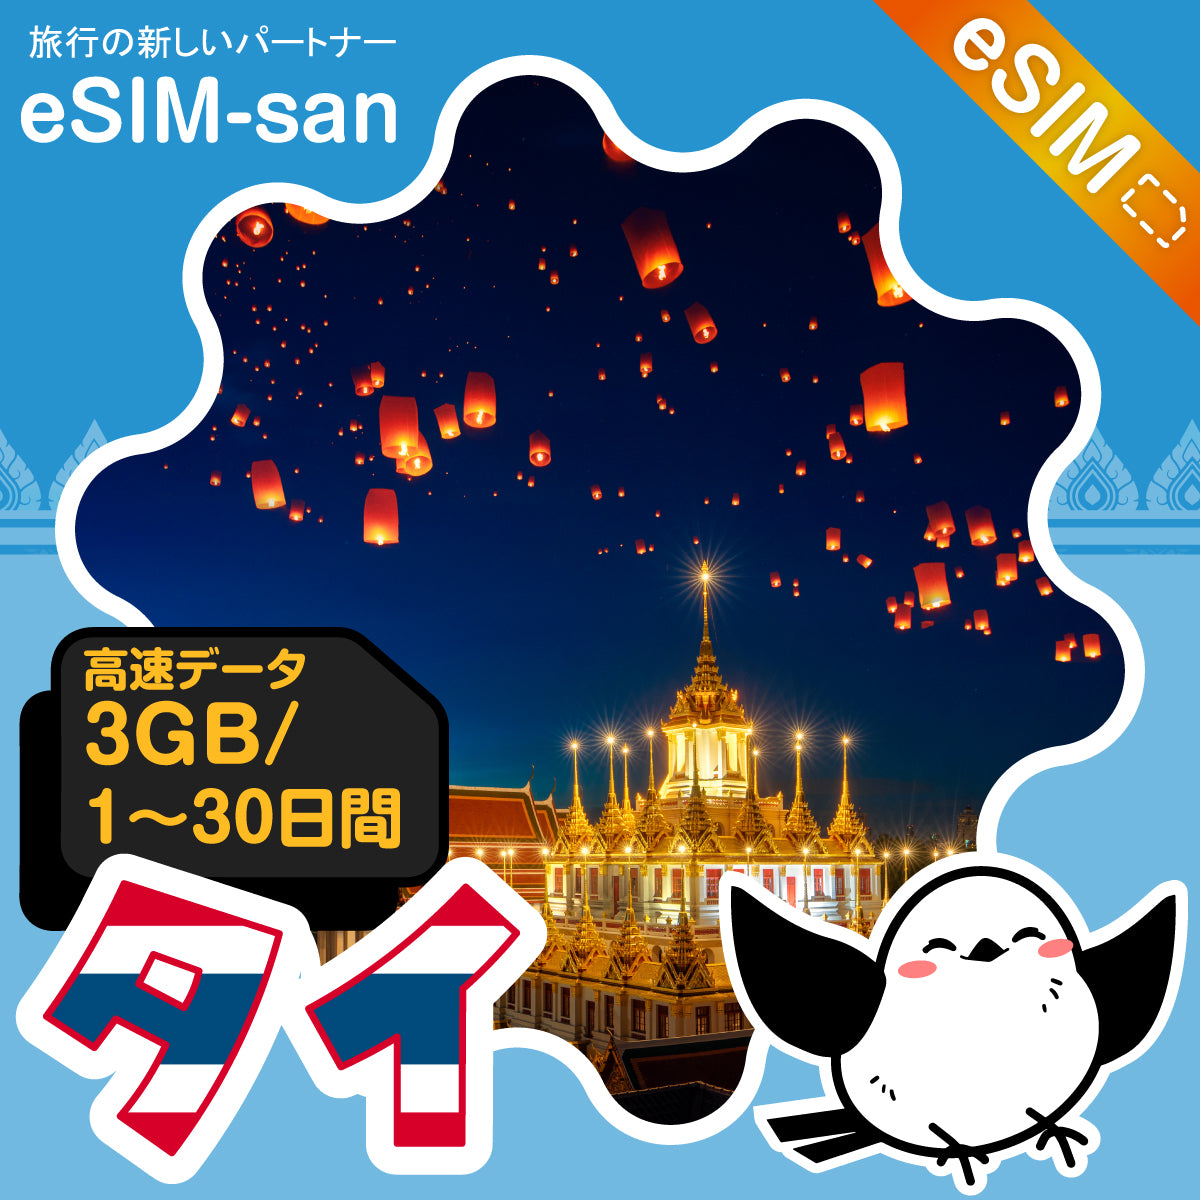 タイeSIMの3GB/dayプラン画像_eSIM-san